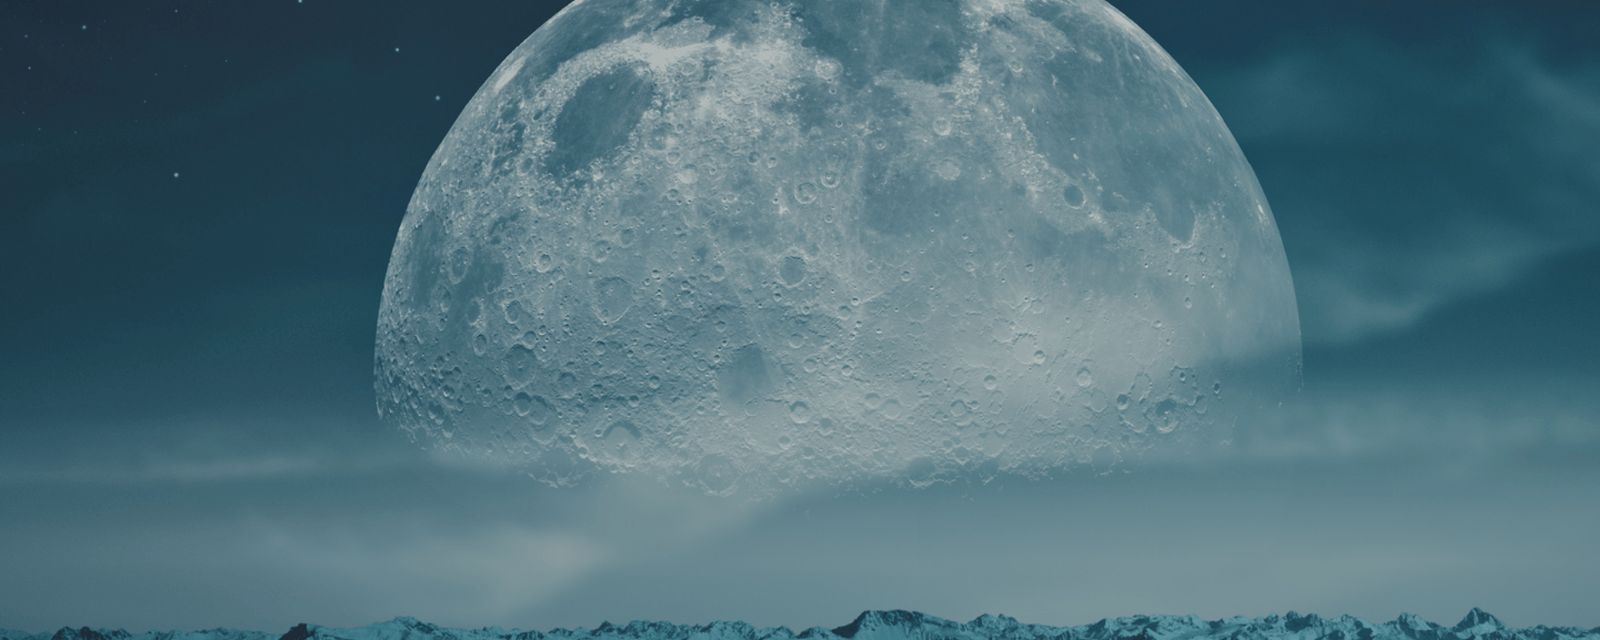 ASTROLOGIE : Voici ce que la Lune dit de votre début de semaine!